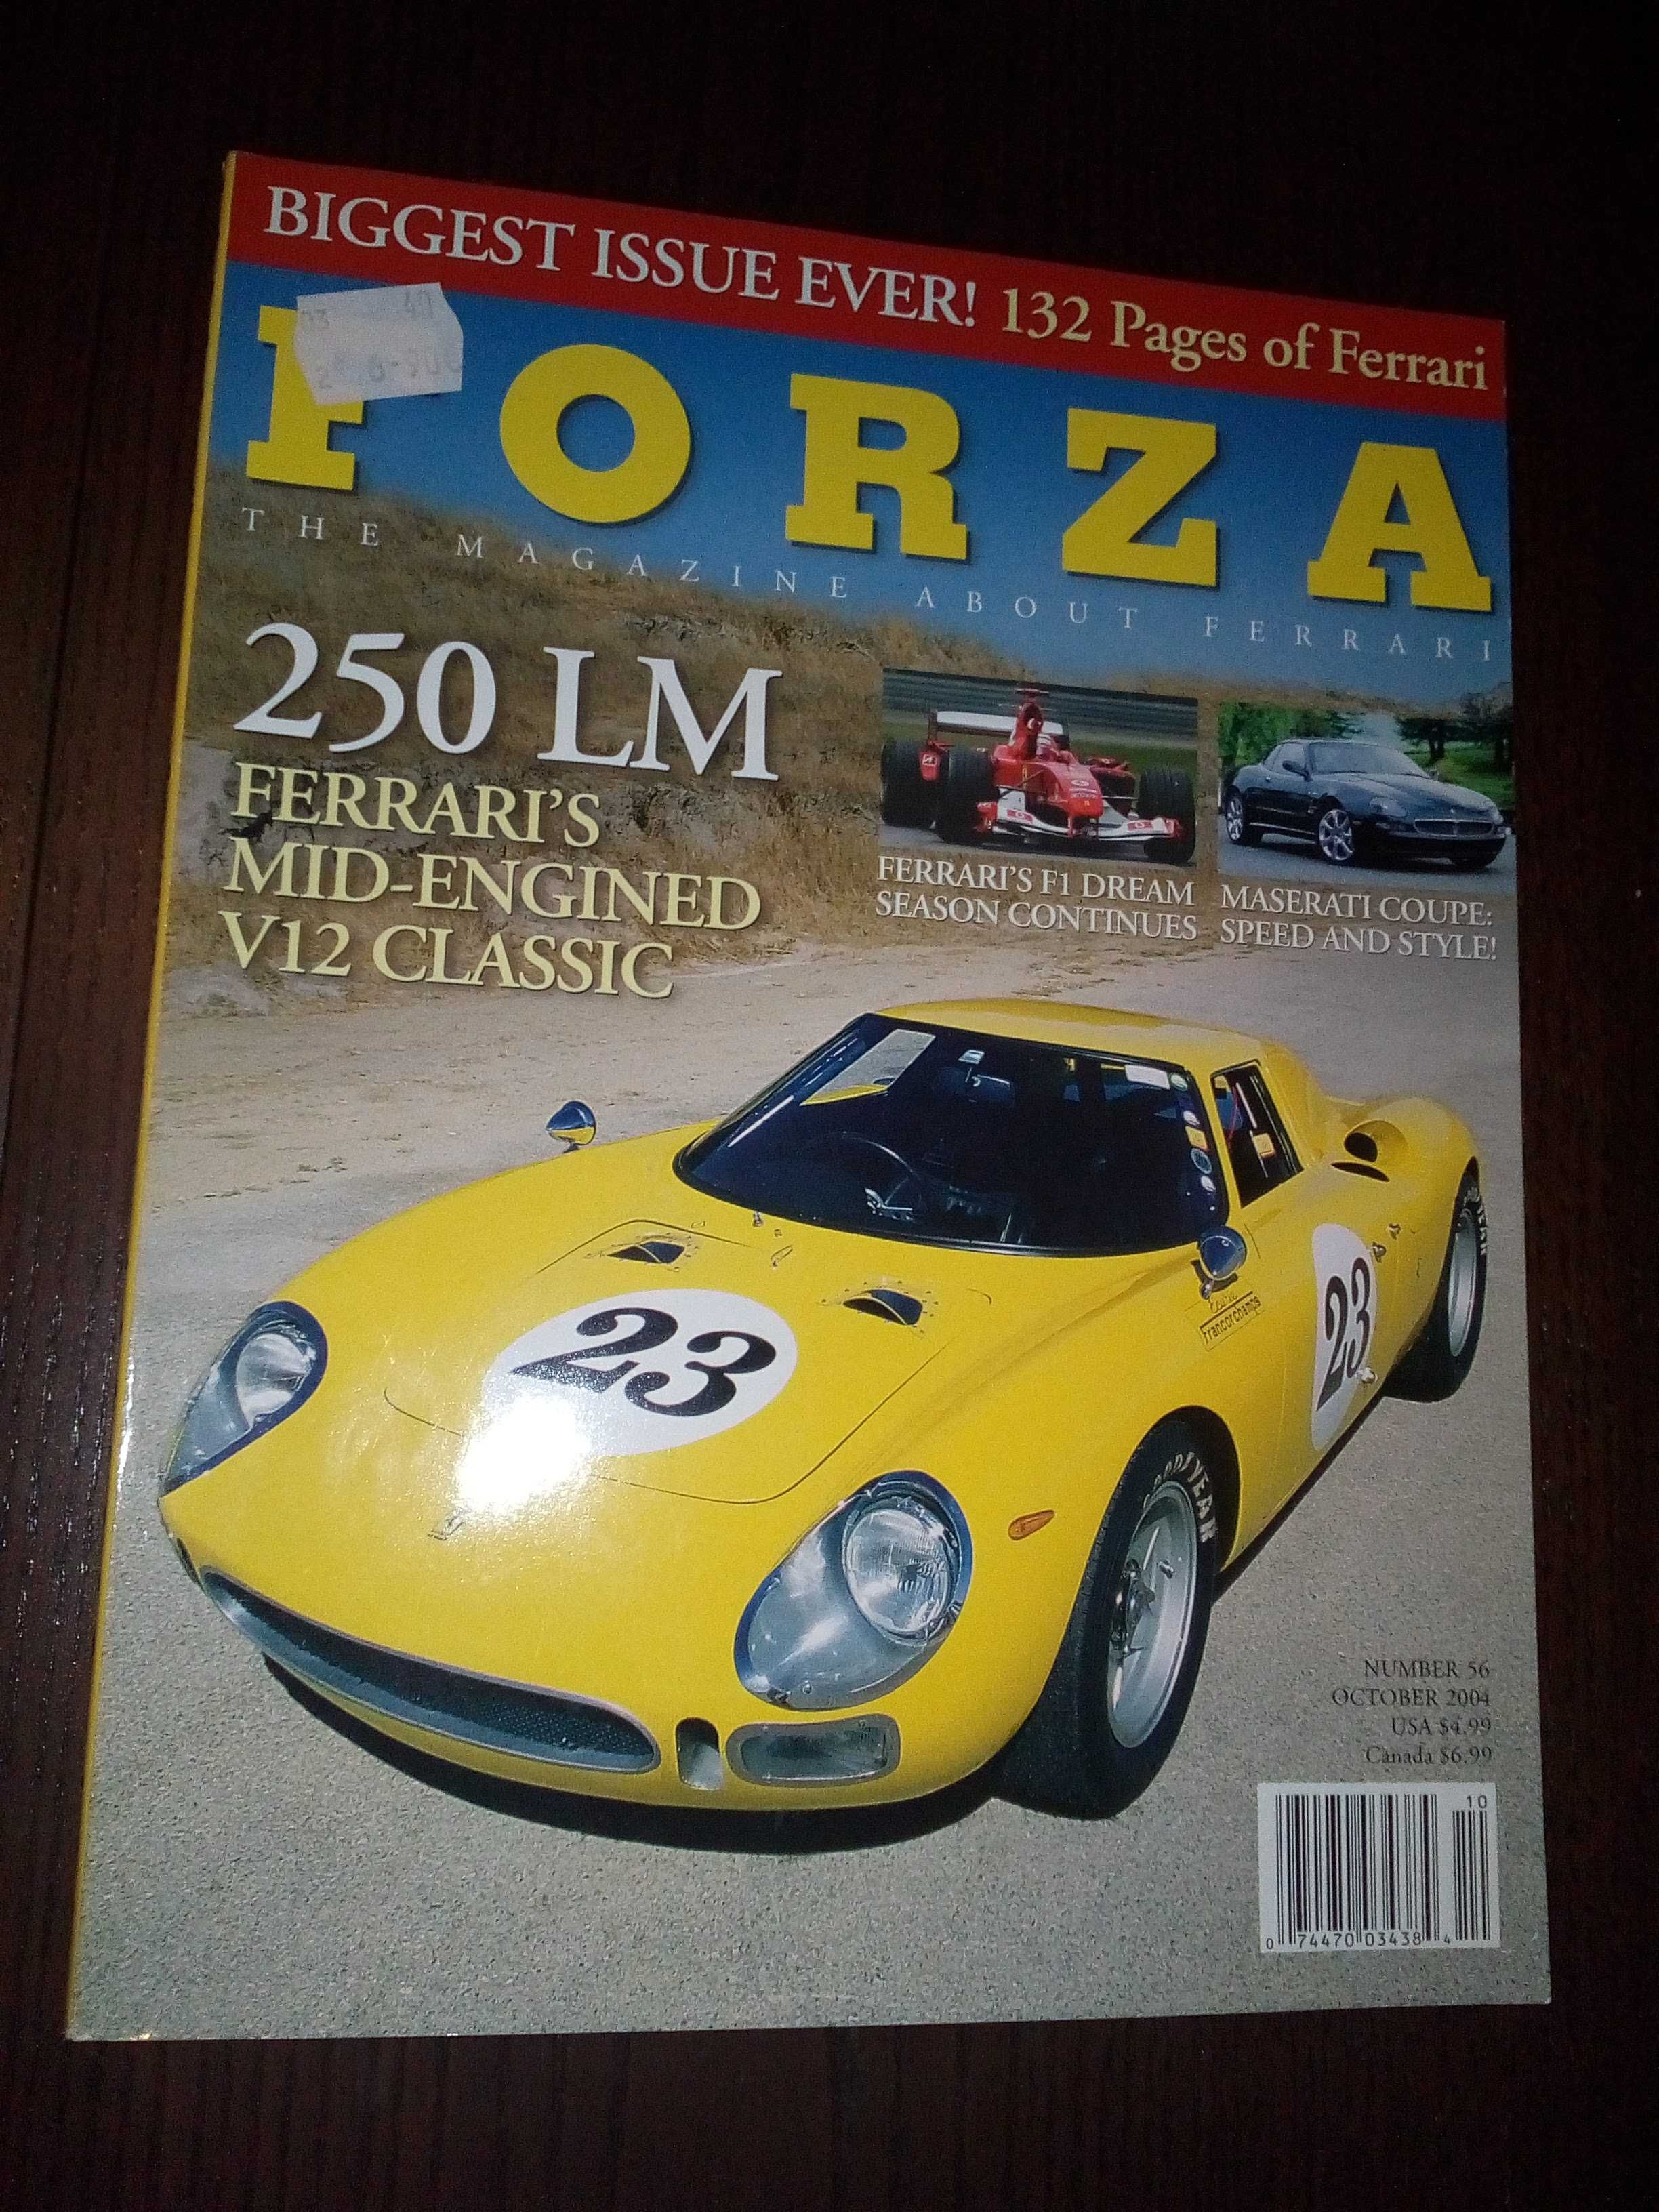 Revistas Ferrari - Forza e outras